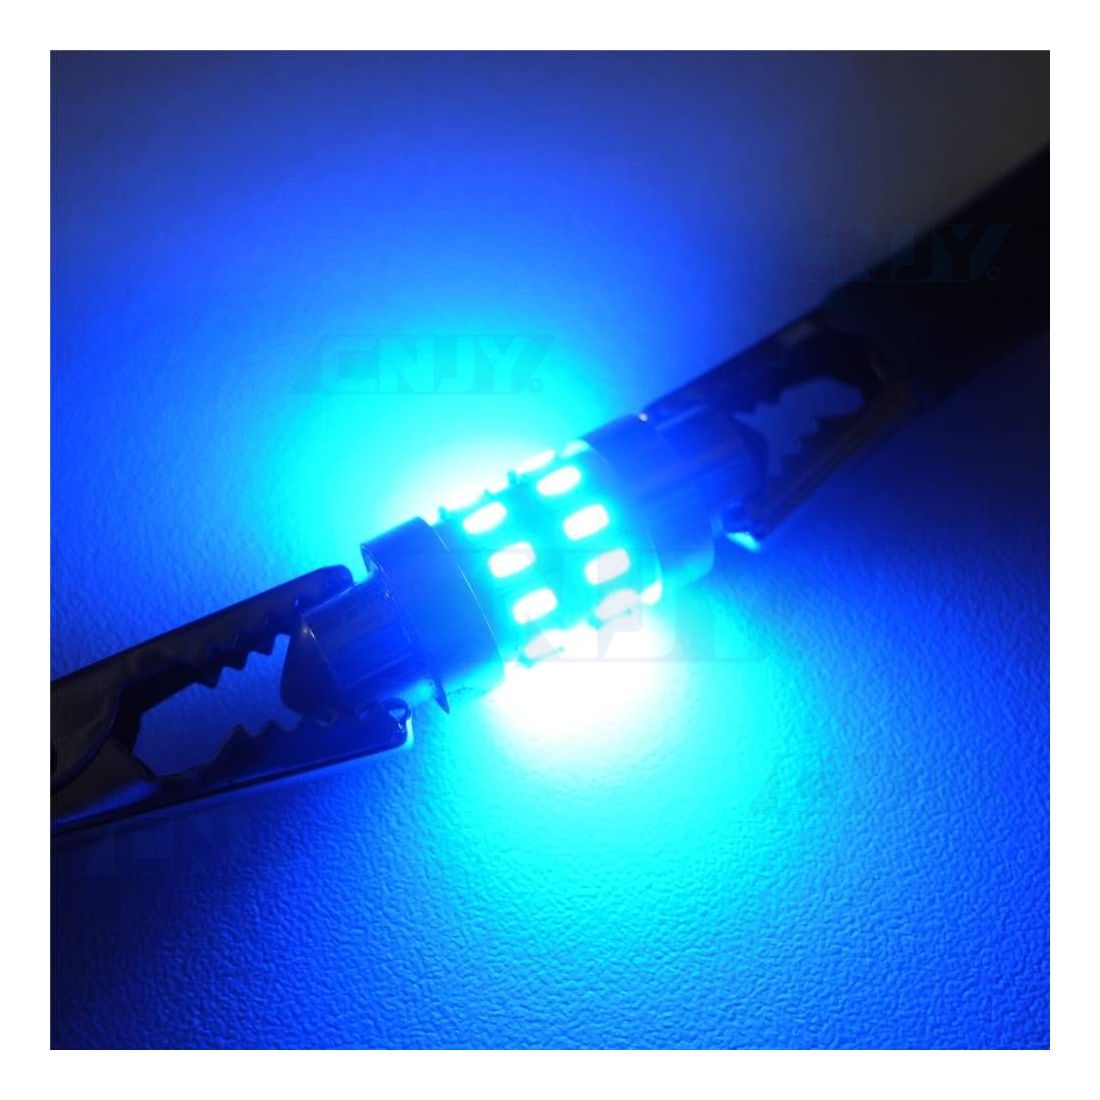 Ampoule LED C5W Bleu / Ampoule navette LED Bleu / Plafonniers